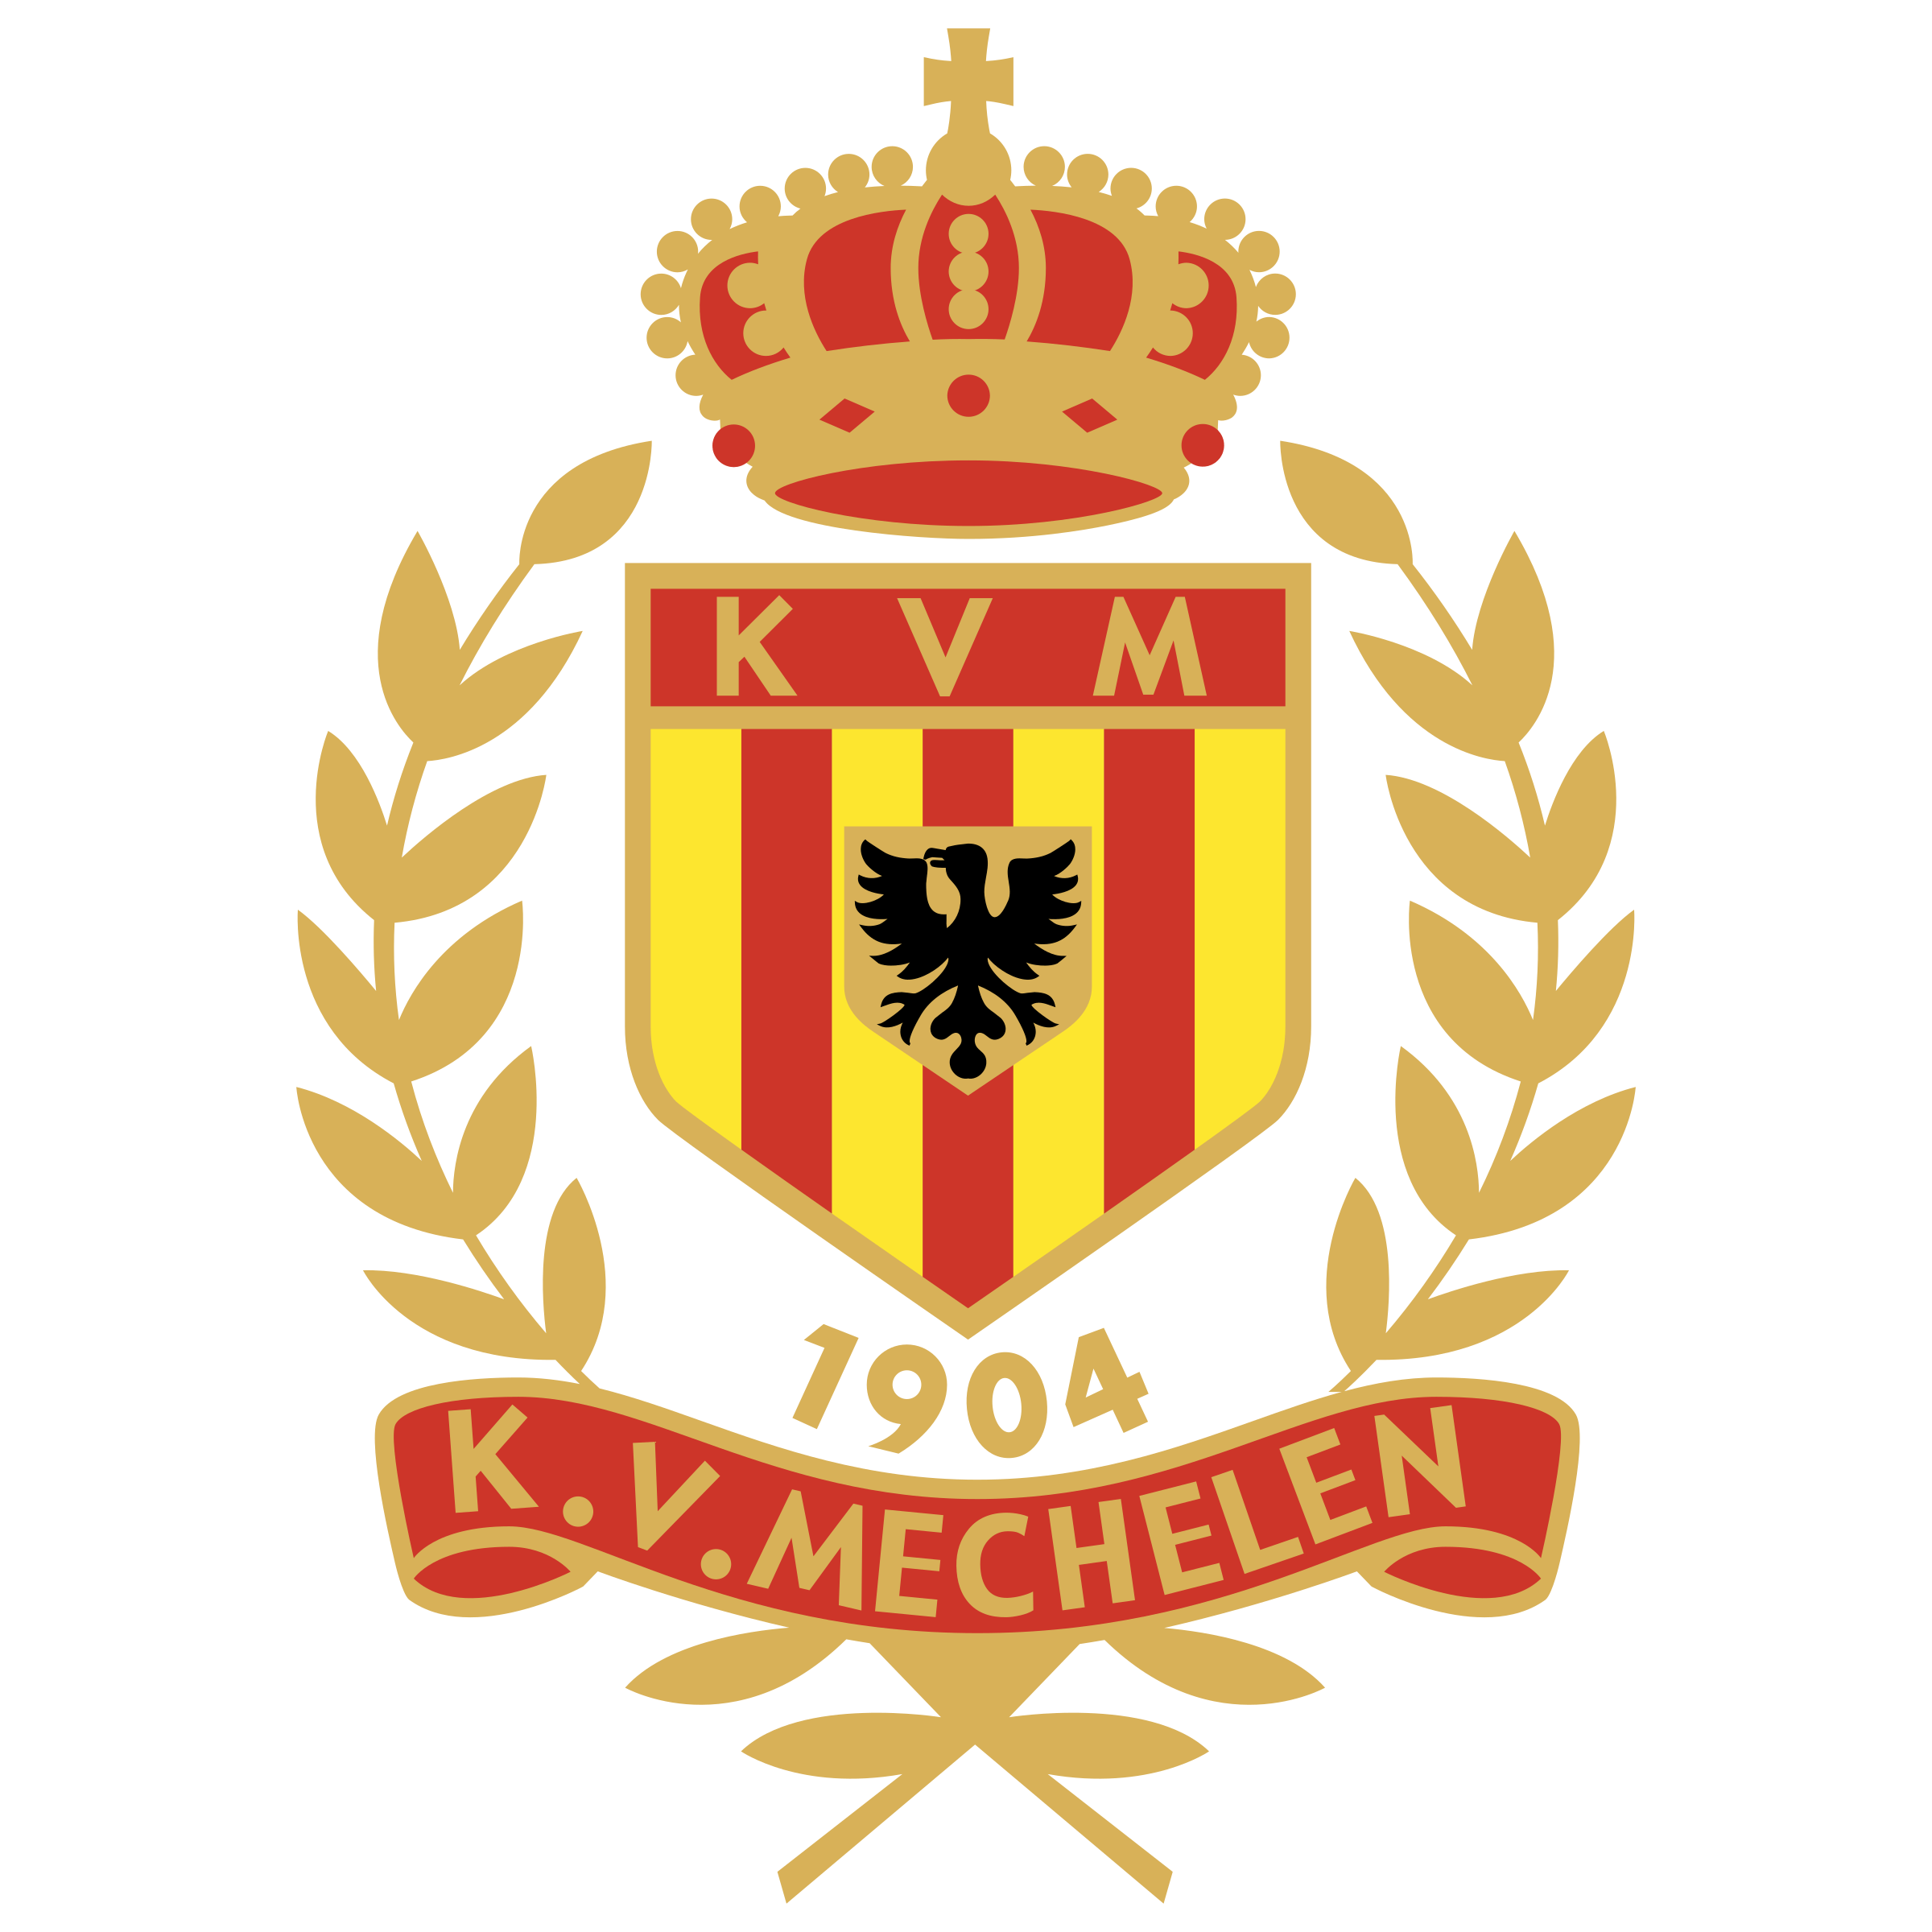 KVM Logo - KV Logo PNG Transparent & SVG Vector